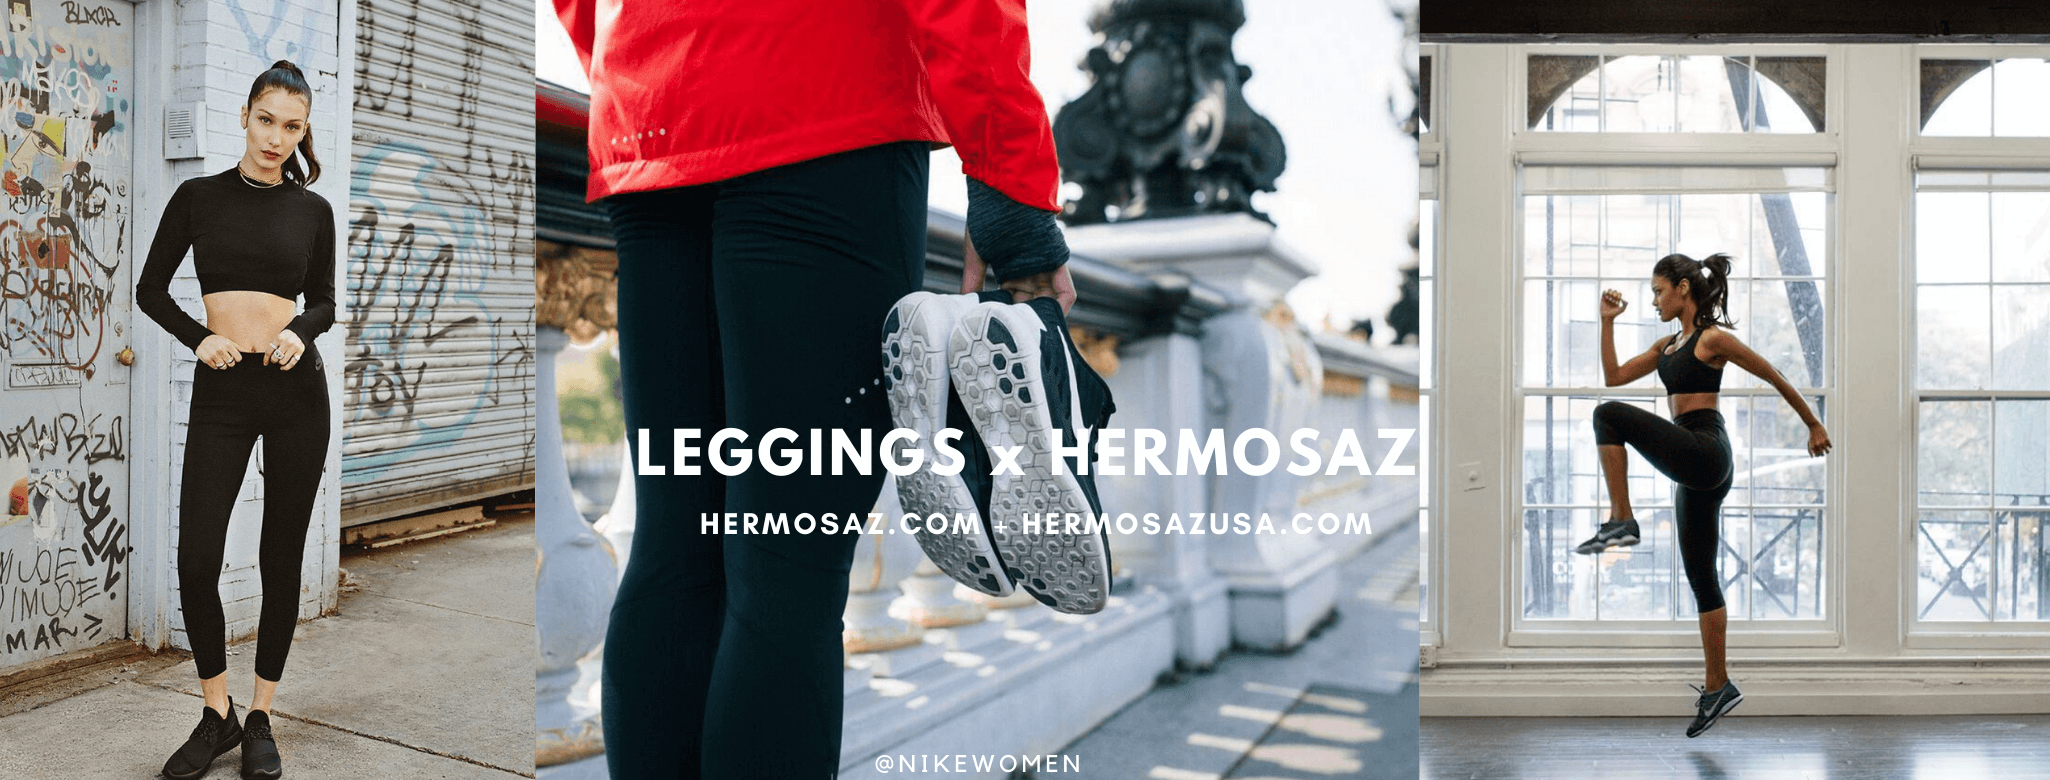 Leggings x Hermosaz